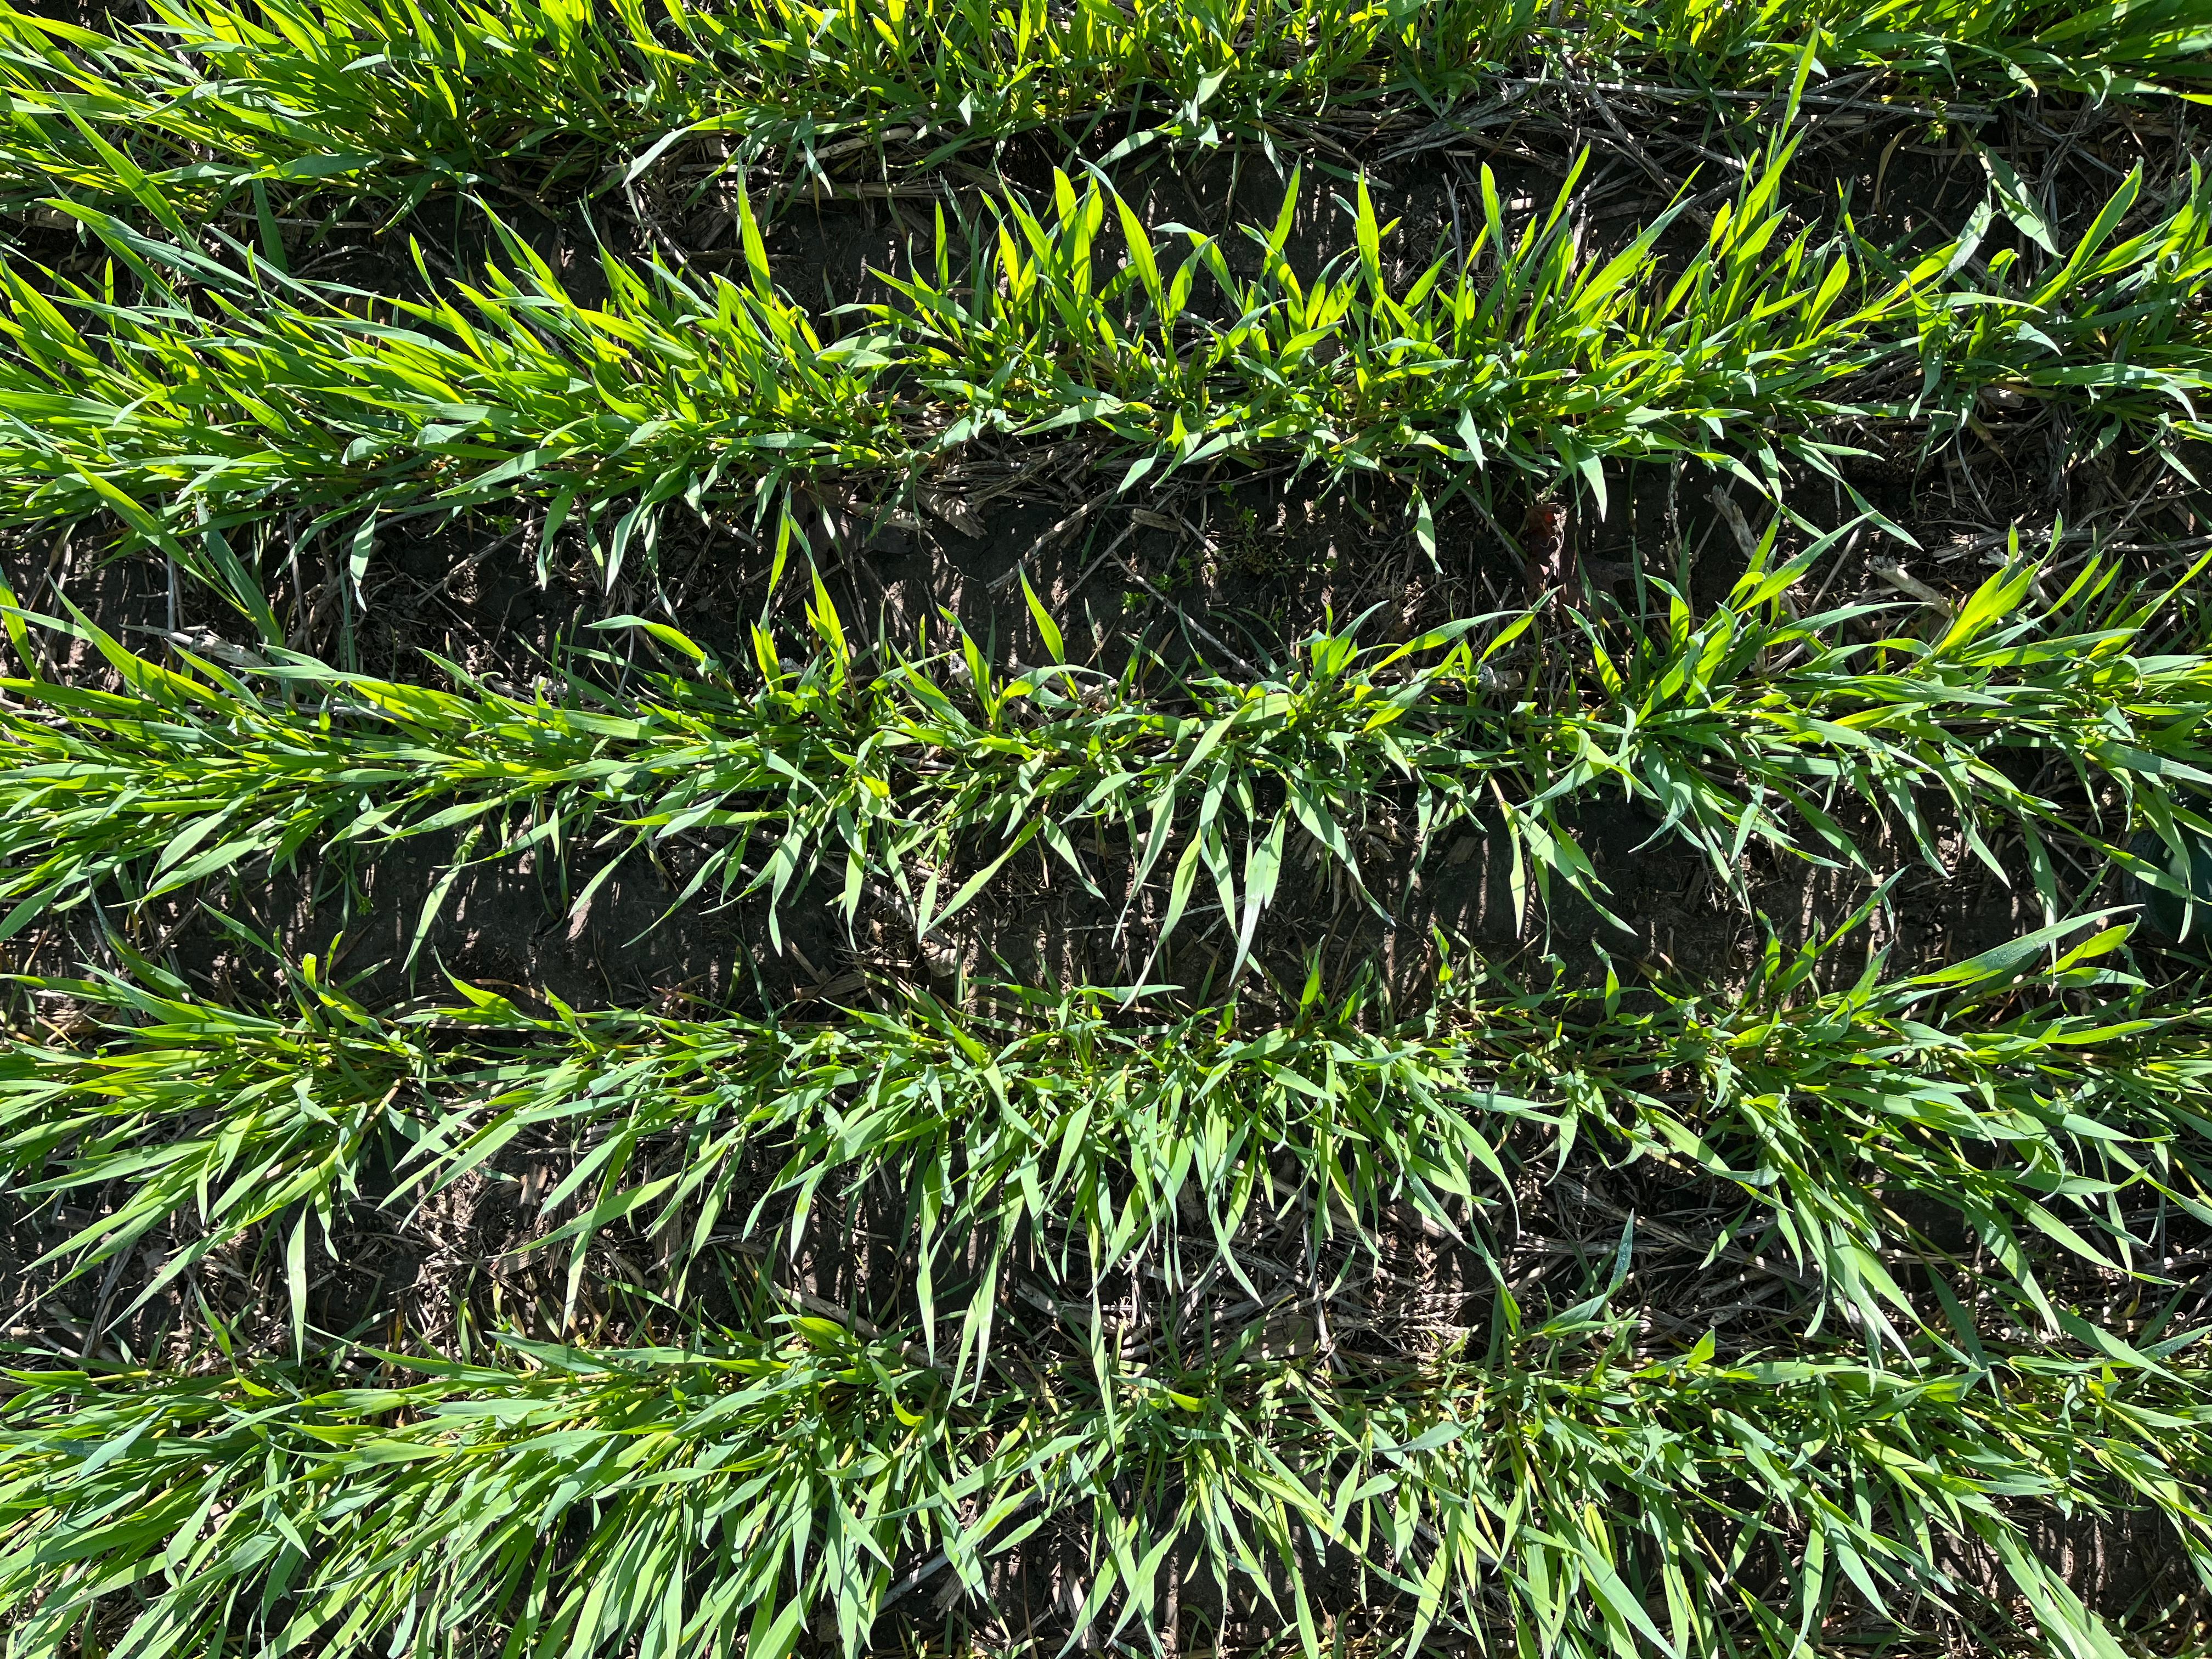 Closeup of wheat crop in a field.